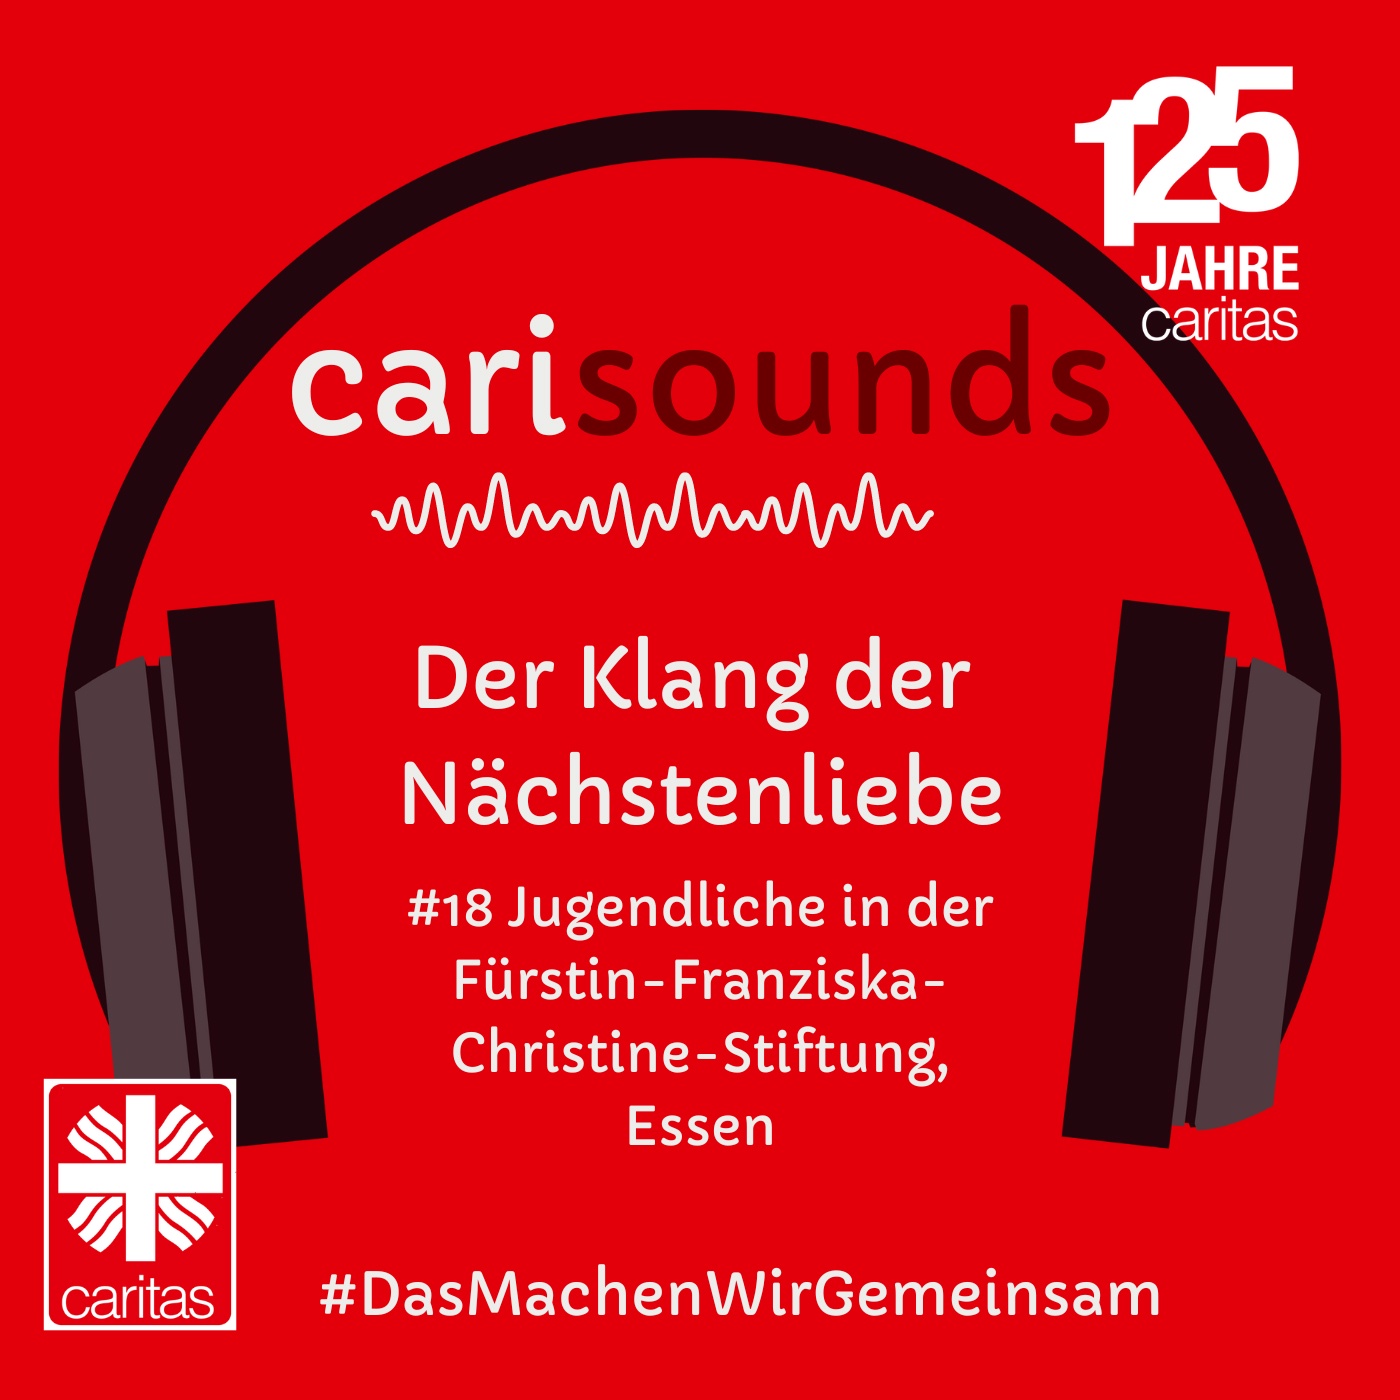 #18 carisounds - Der Klang der Nächstenliebe - Jugendliche in der Fürstin-Franziska-Christine-Stiftung in Essen